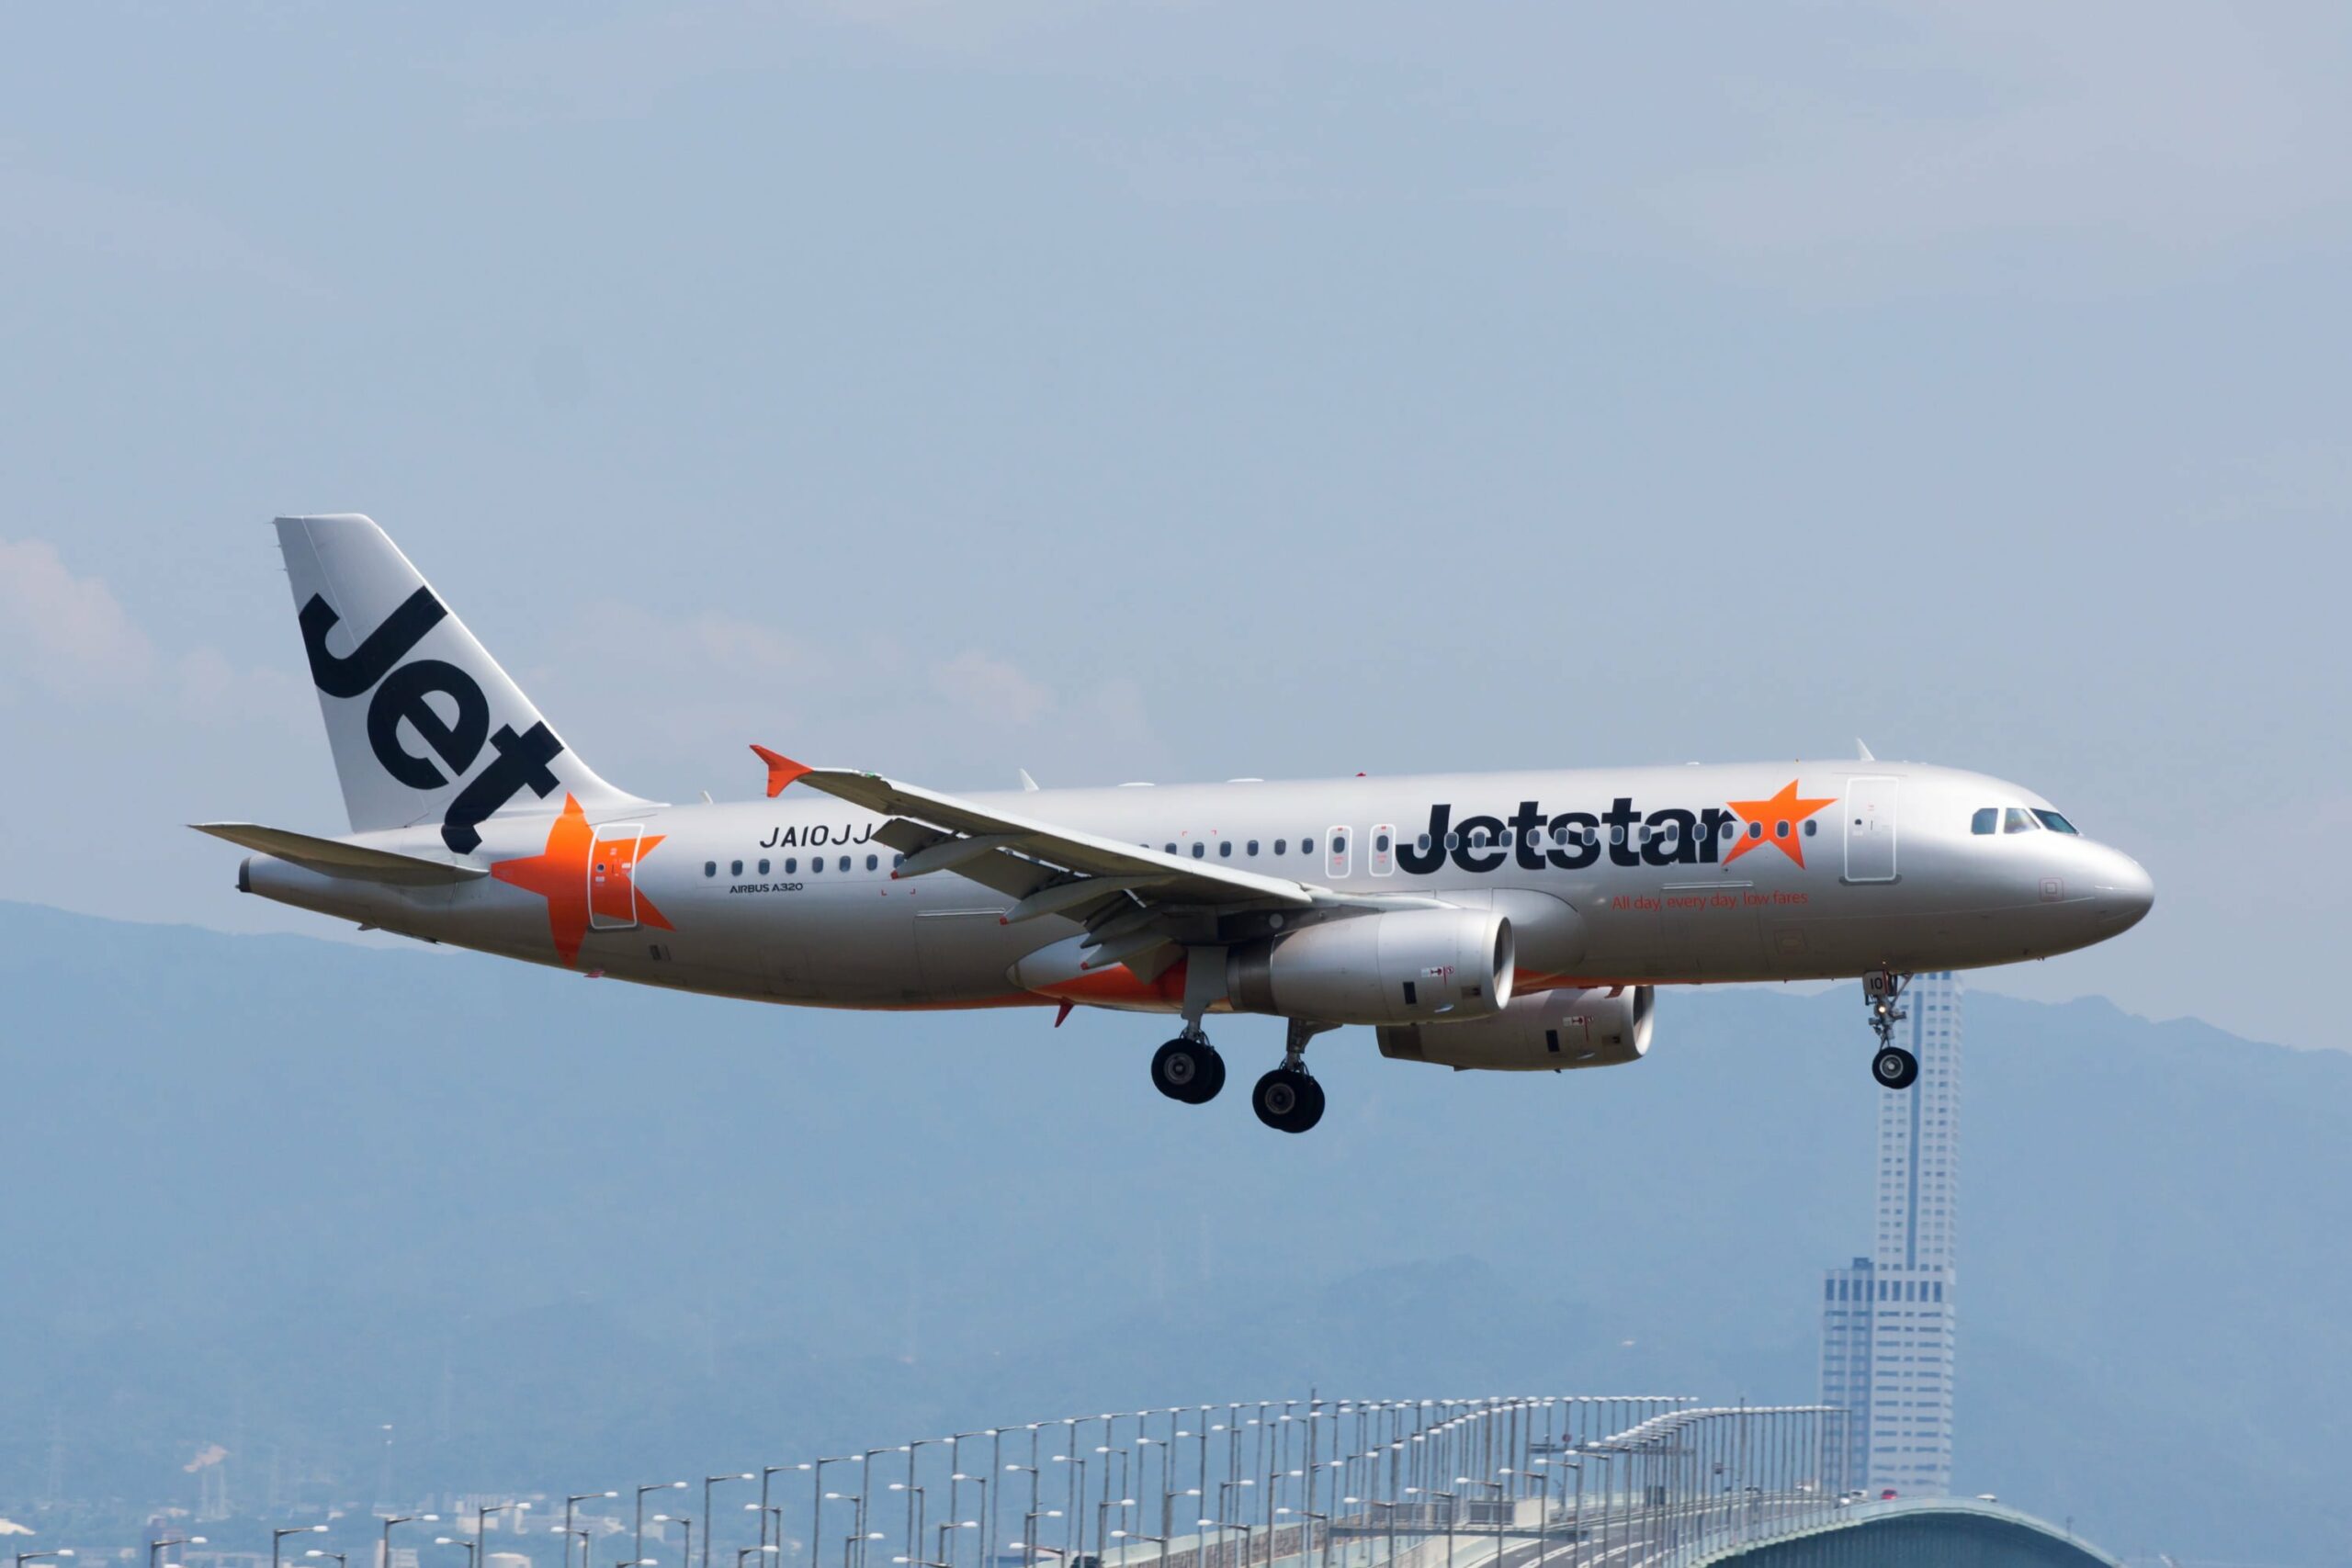 新千歲機場／捷星日本航空（Jetstar Japan）登機櫃台轉移 搭機前請注意